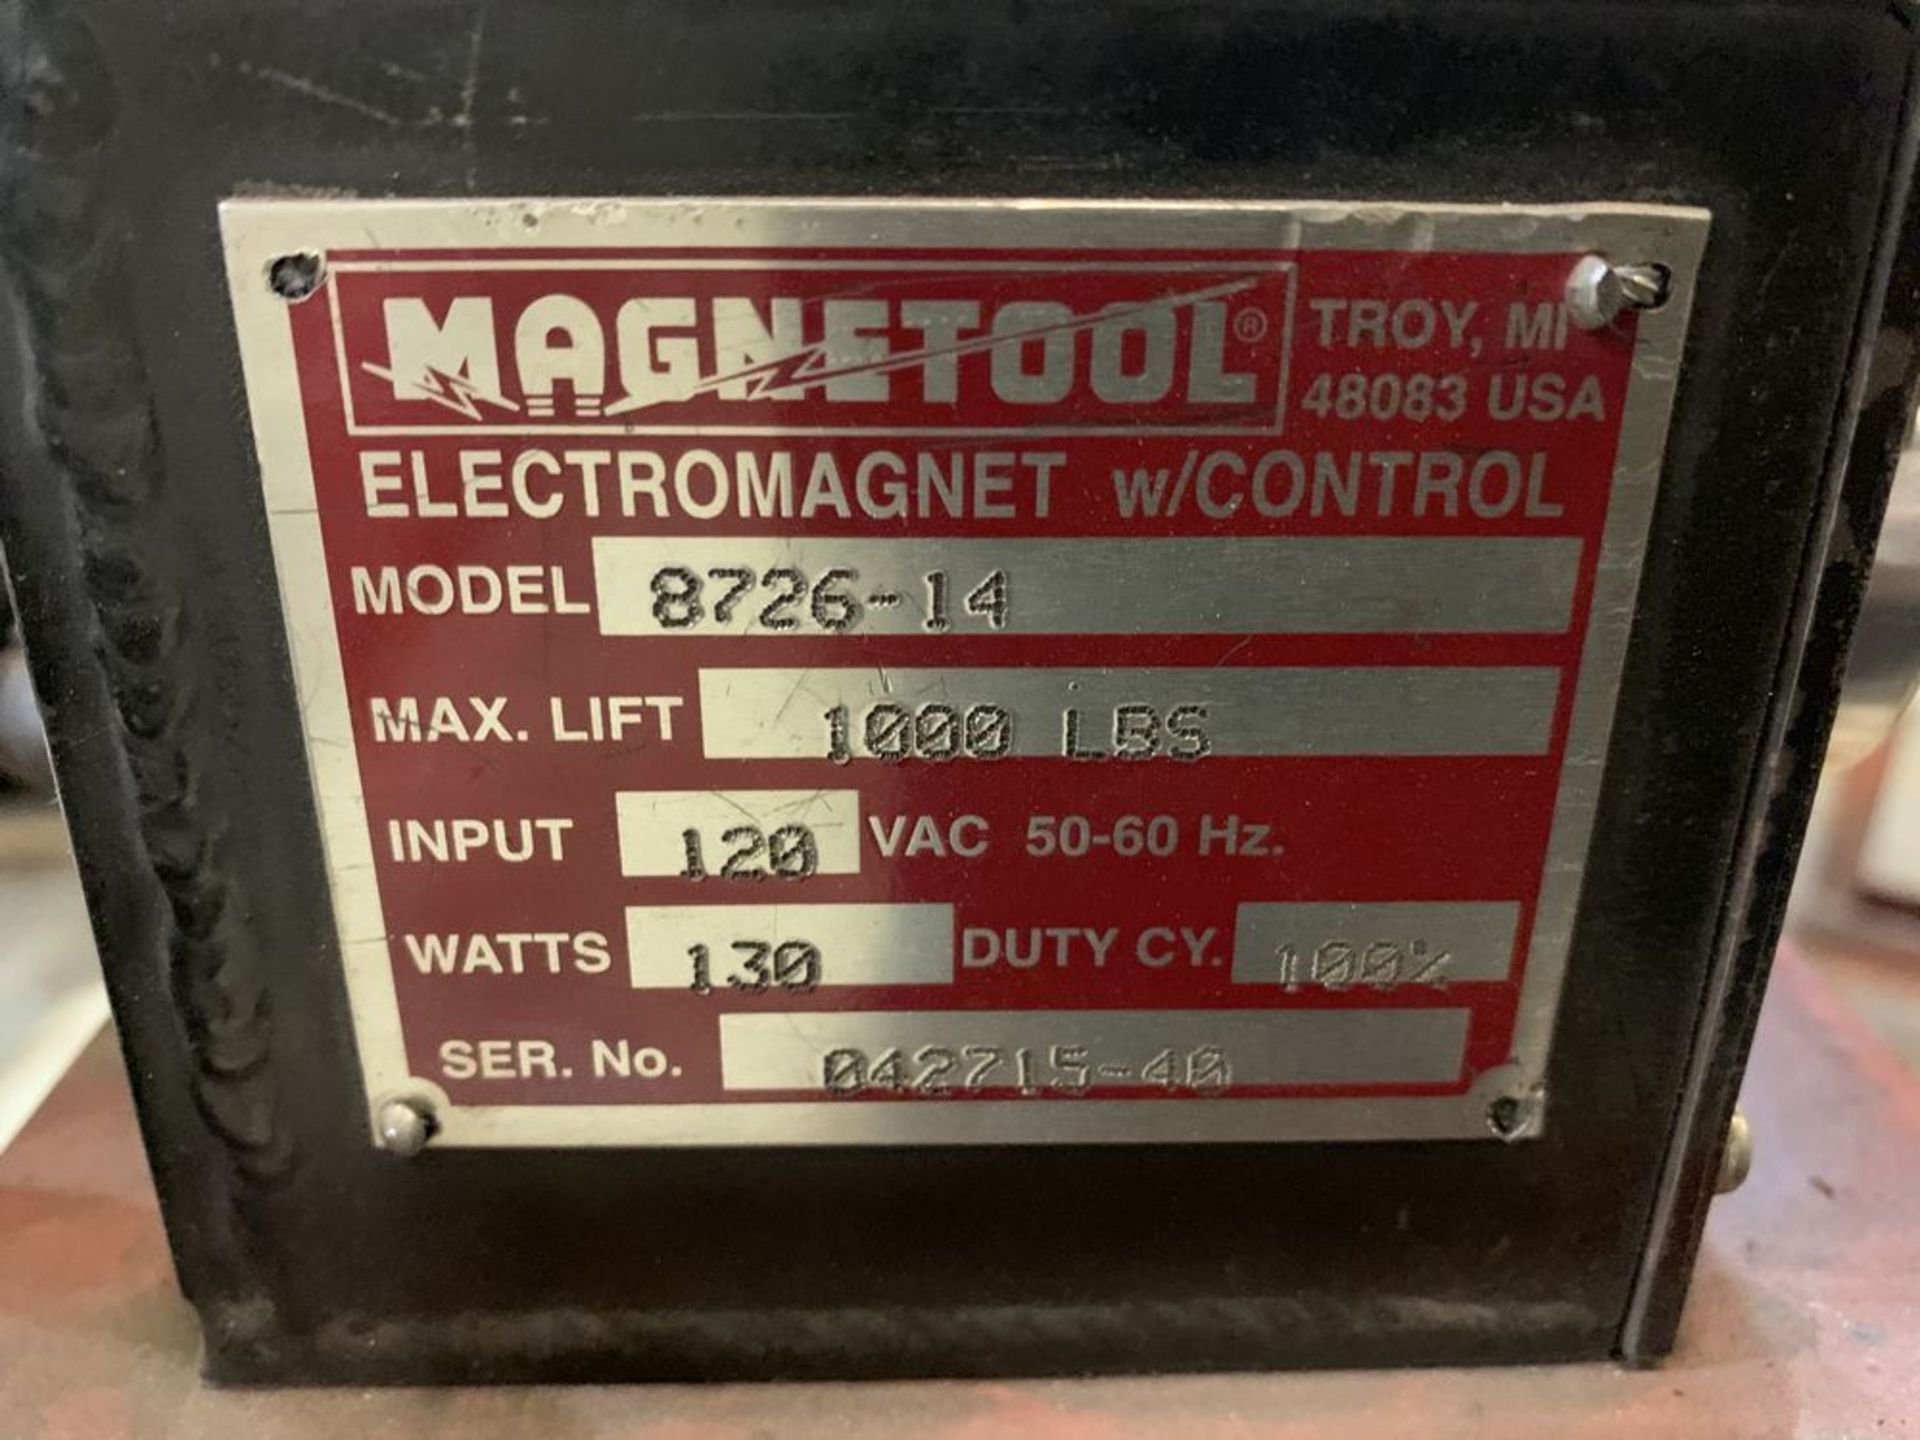 Magnetool 8726-14 Electro Magnet, 1,000 LB Capacity - Bild 2 aus 2